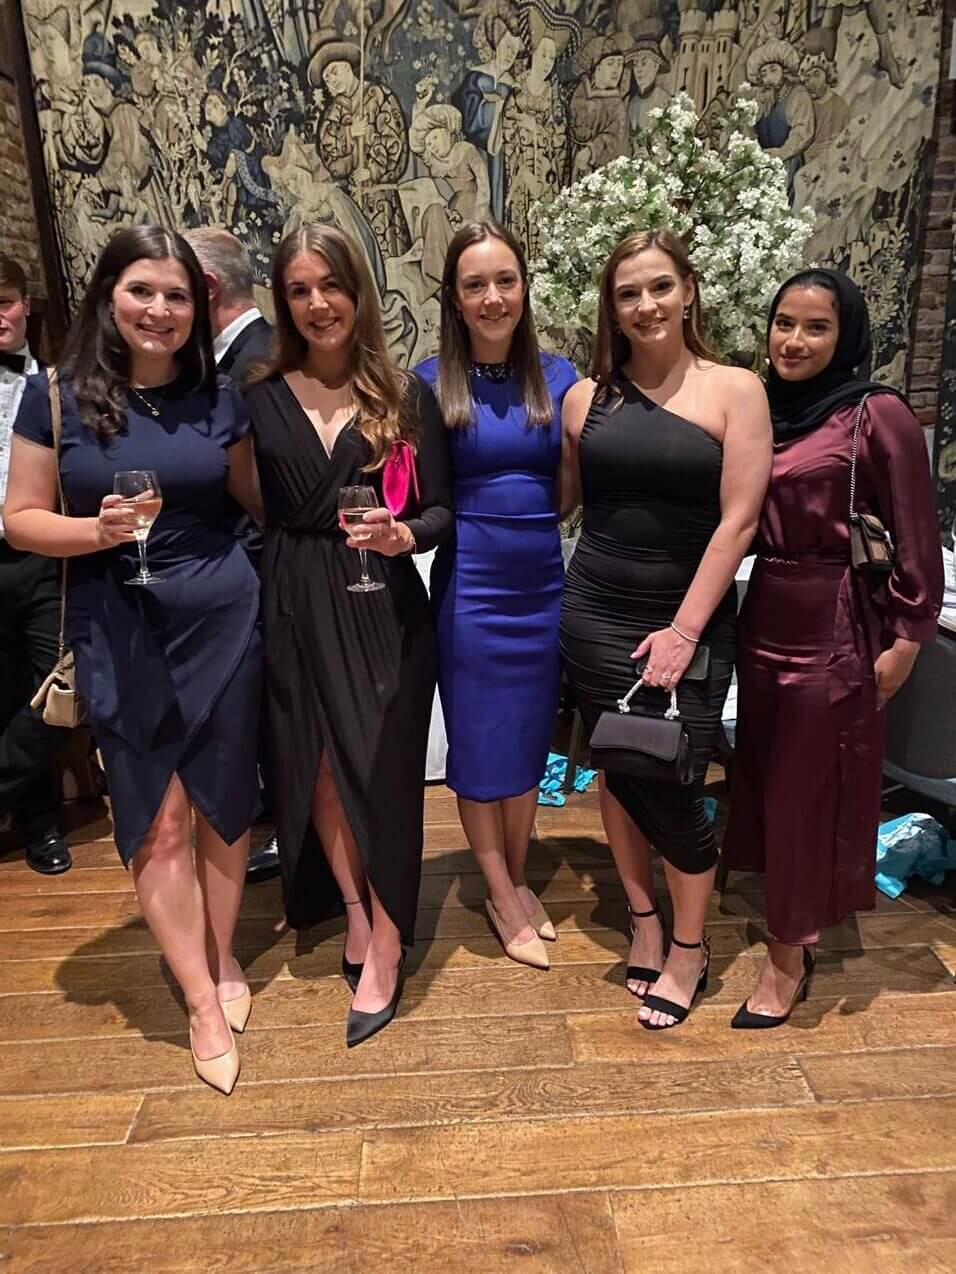 5 women in dresses holding wine glasses